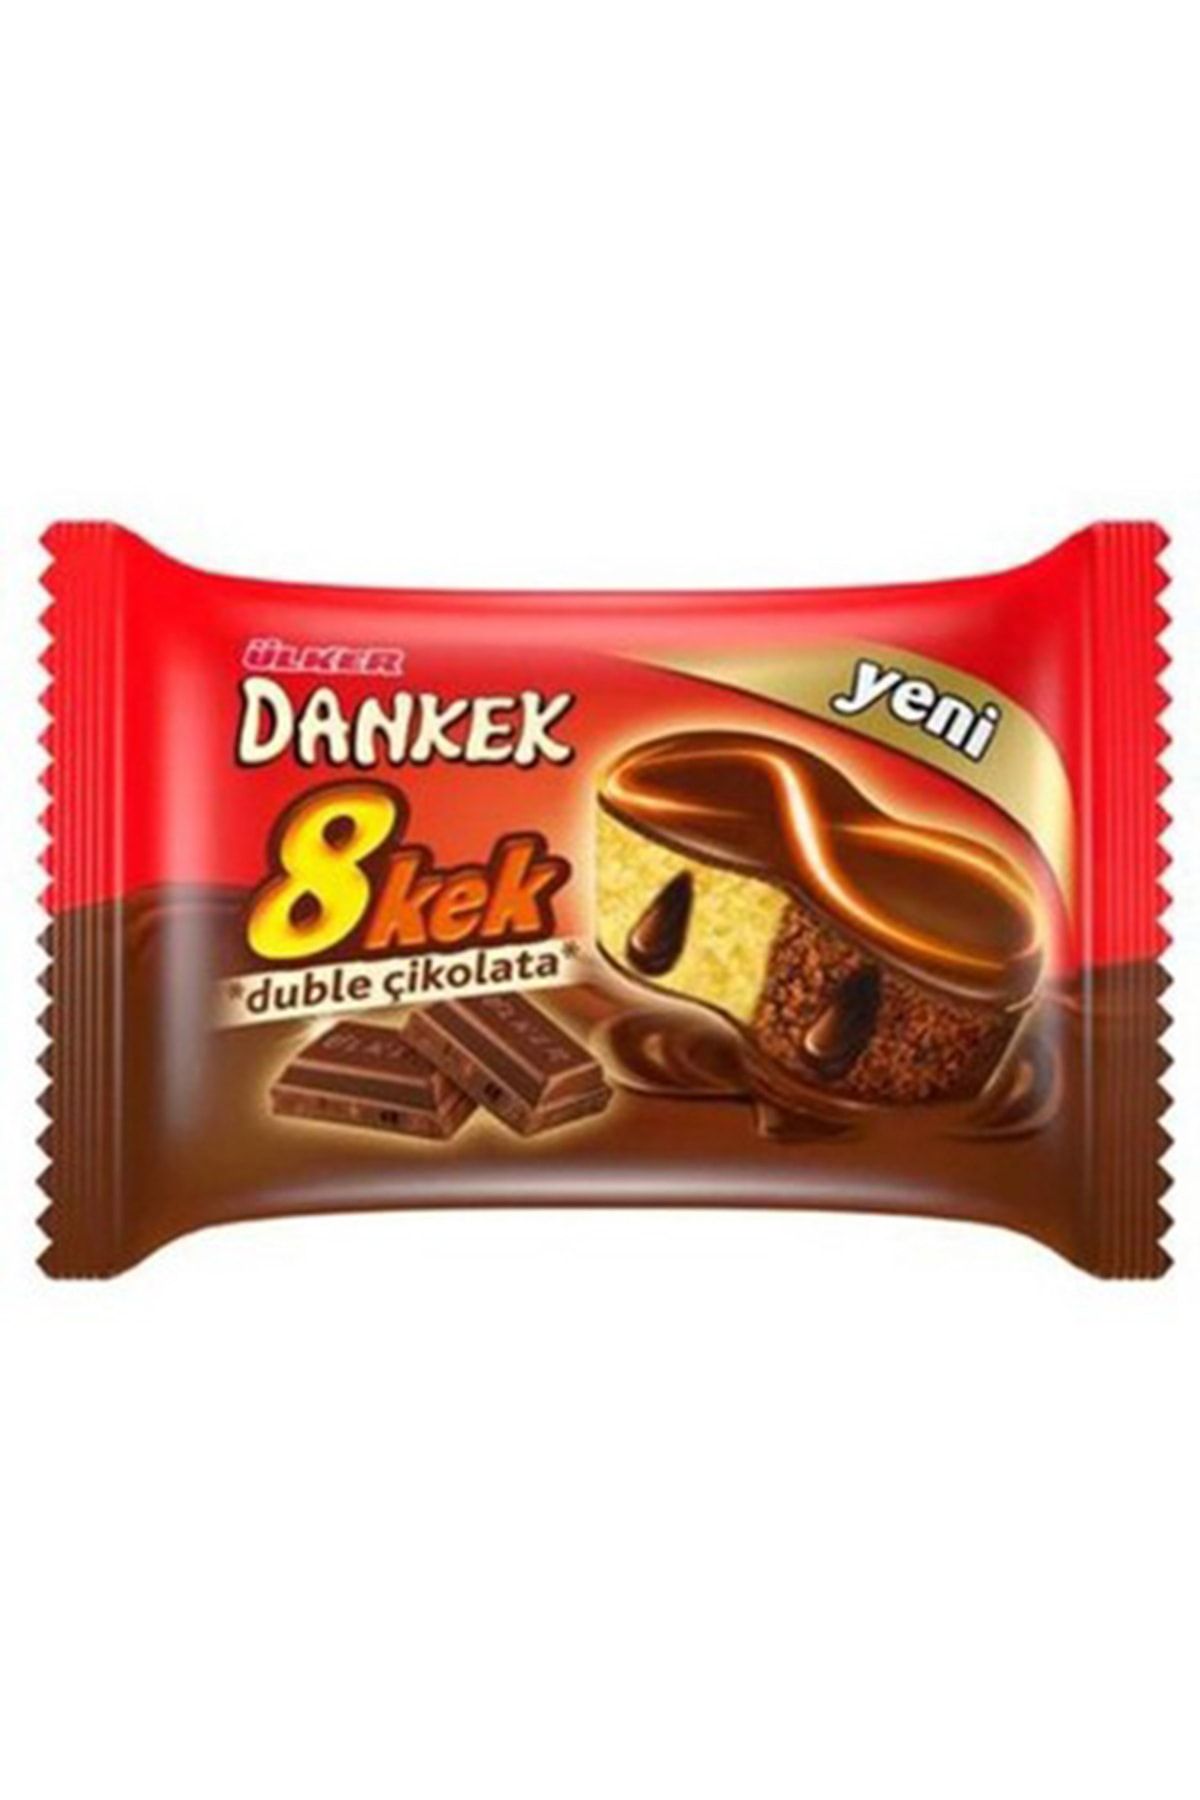 Ülker Dankek Ülker Double Çikolata 8 Kek 45 gr